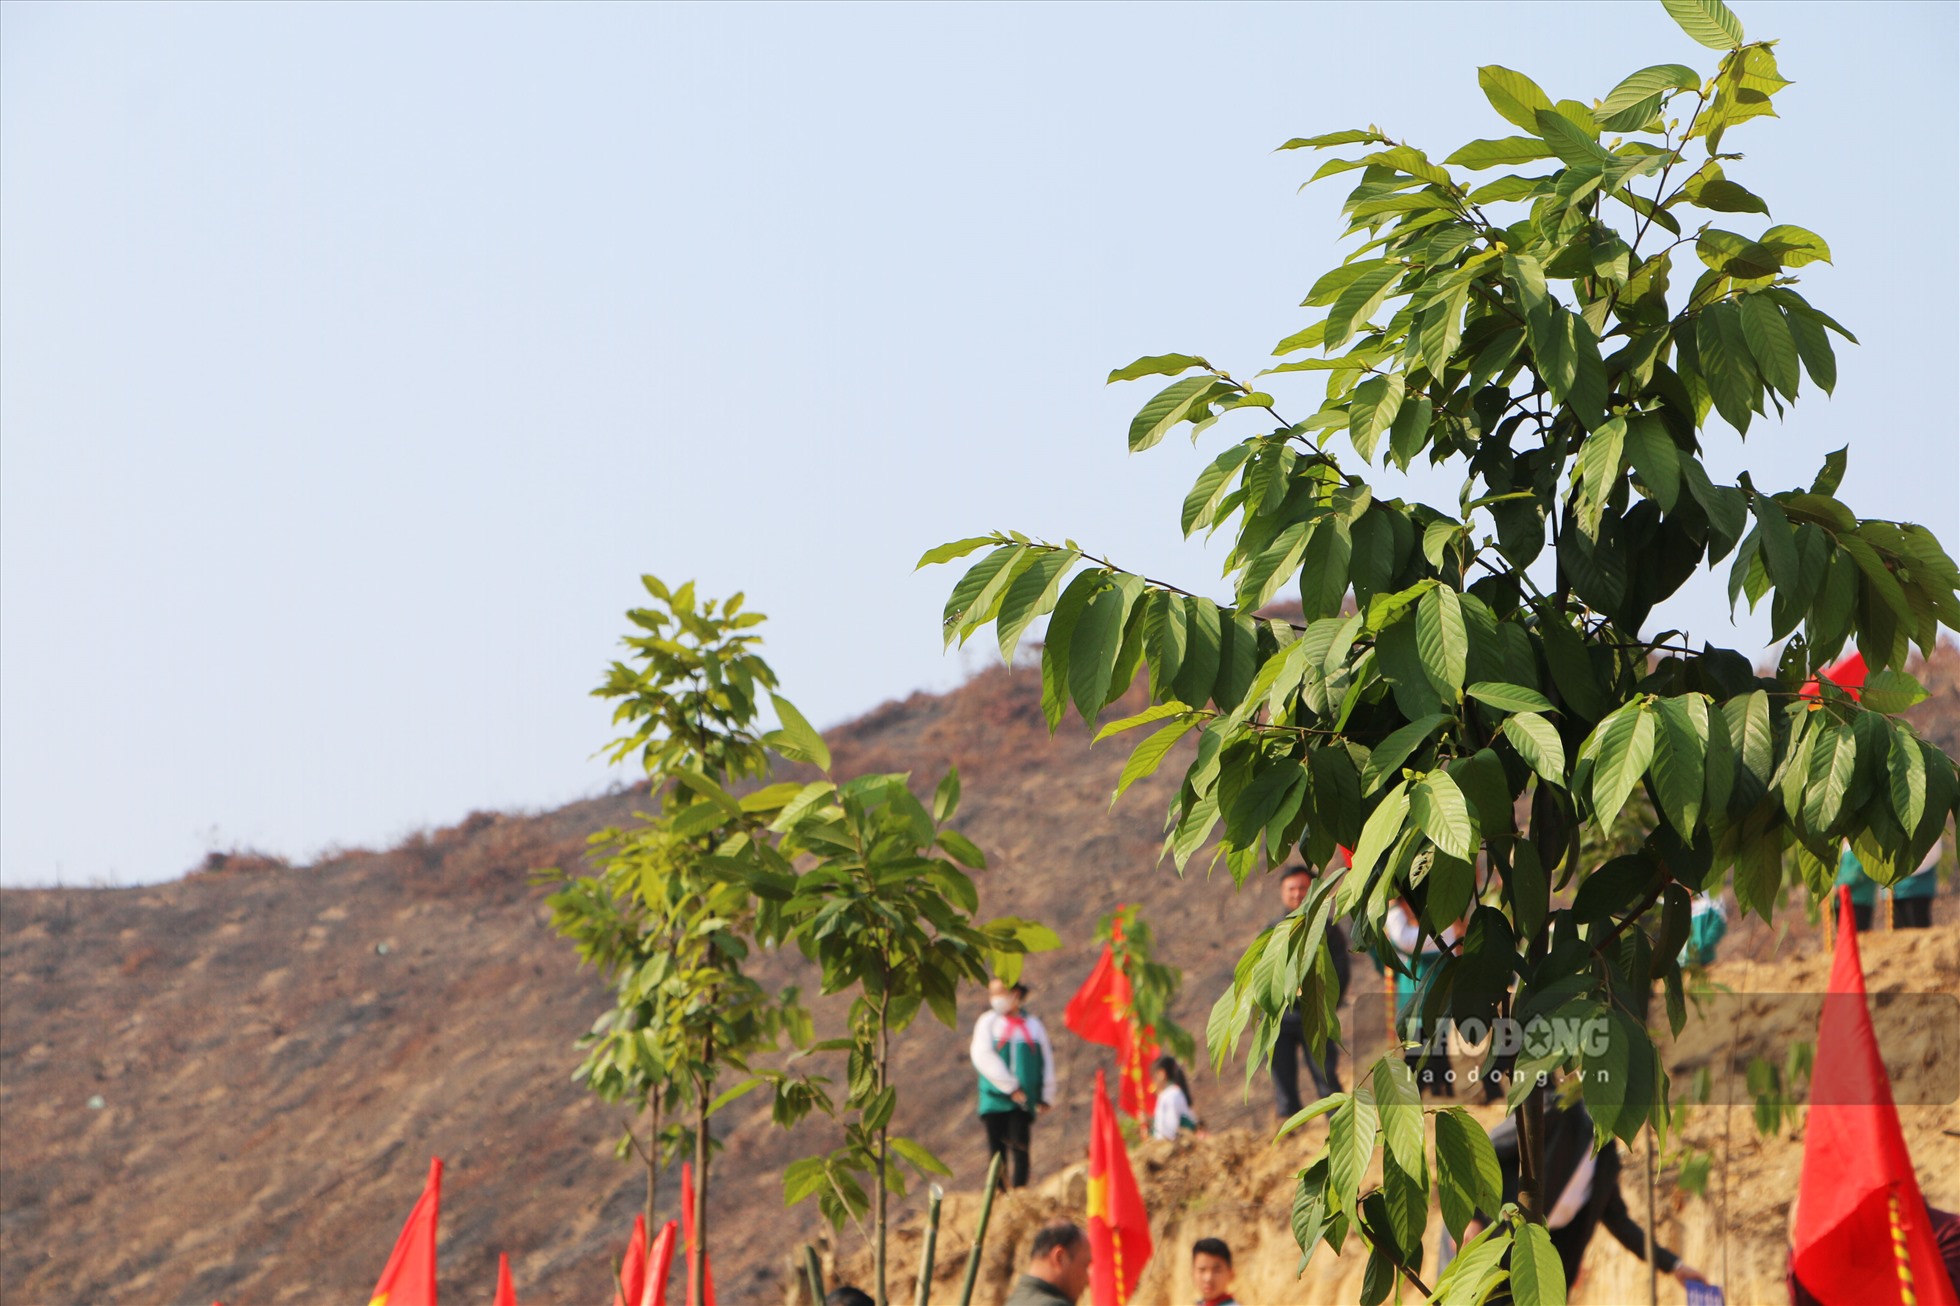 Trong thời gian tới, tỉnh Tuyên Quang đặt mục tiêu tiếp tục duy trì và nâng cao độ che phủ rừng, đẩy mạnh phát triển kinh tế nông nghiệp cũng như ứng dụng công nghệ cao trong bảo vệ và phát triển rừng.